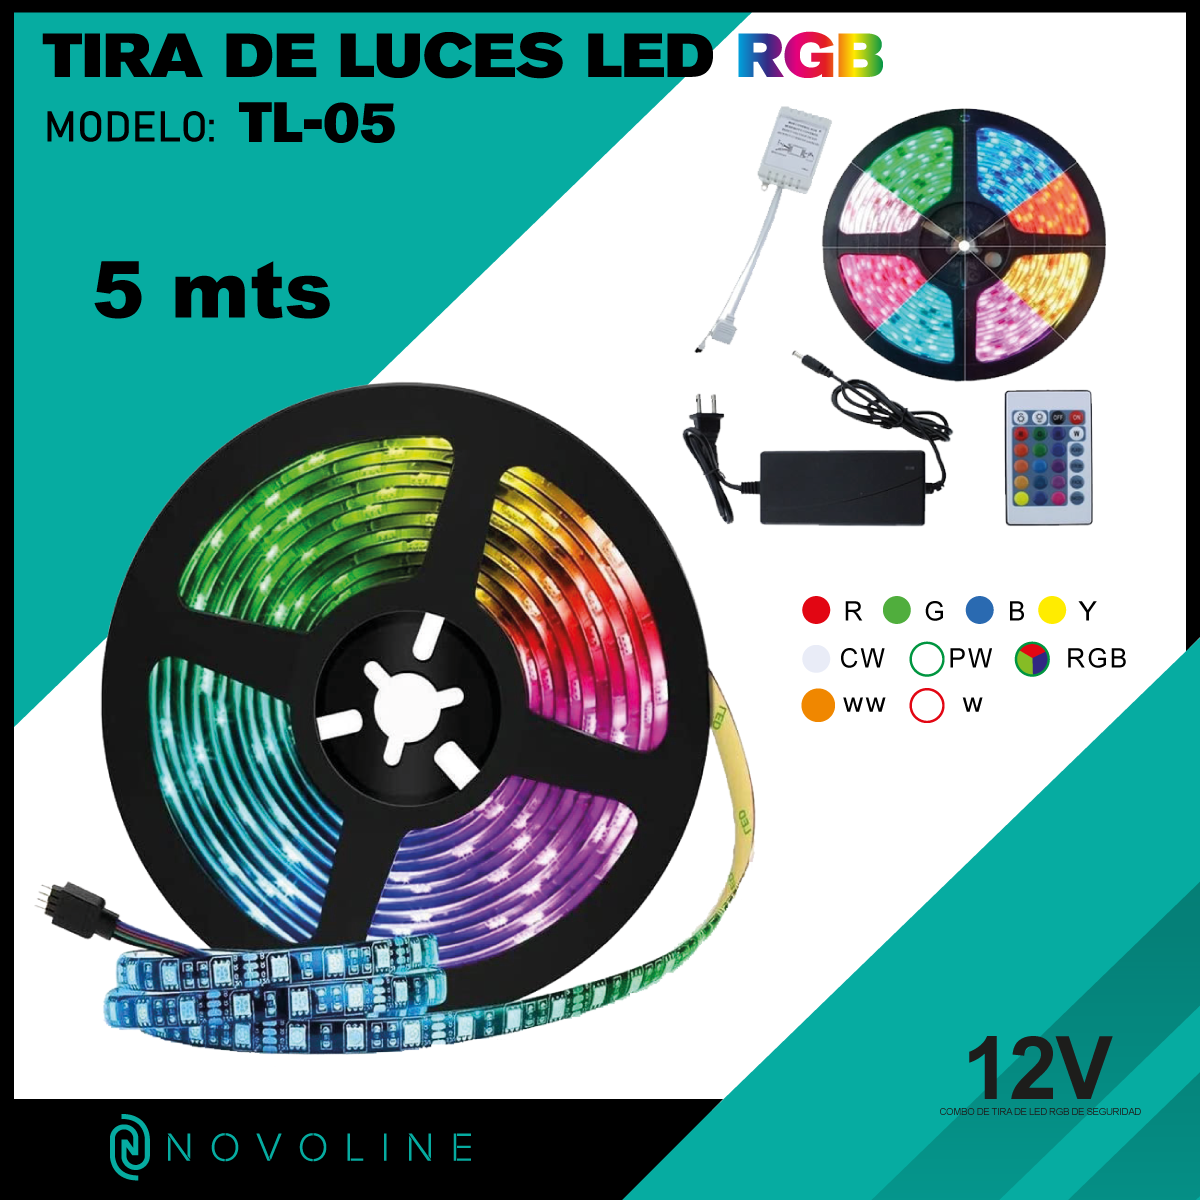 TIRA DE LUCES LED 5 METROS